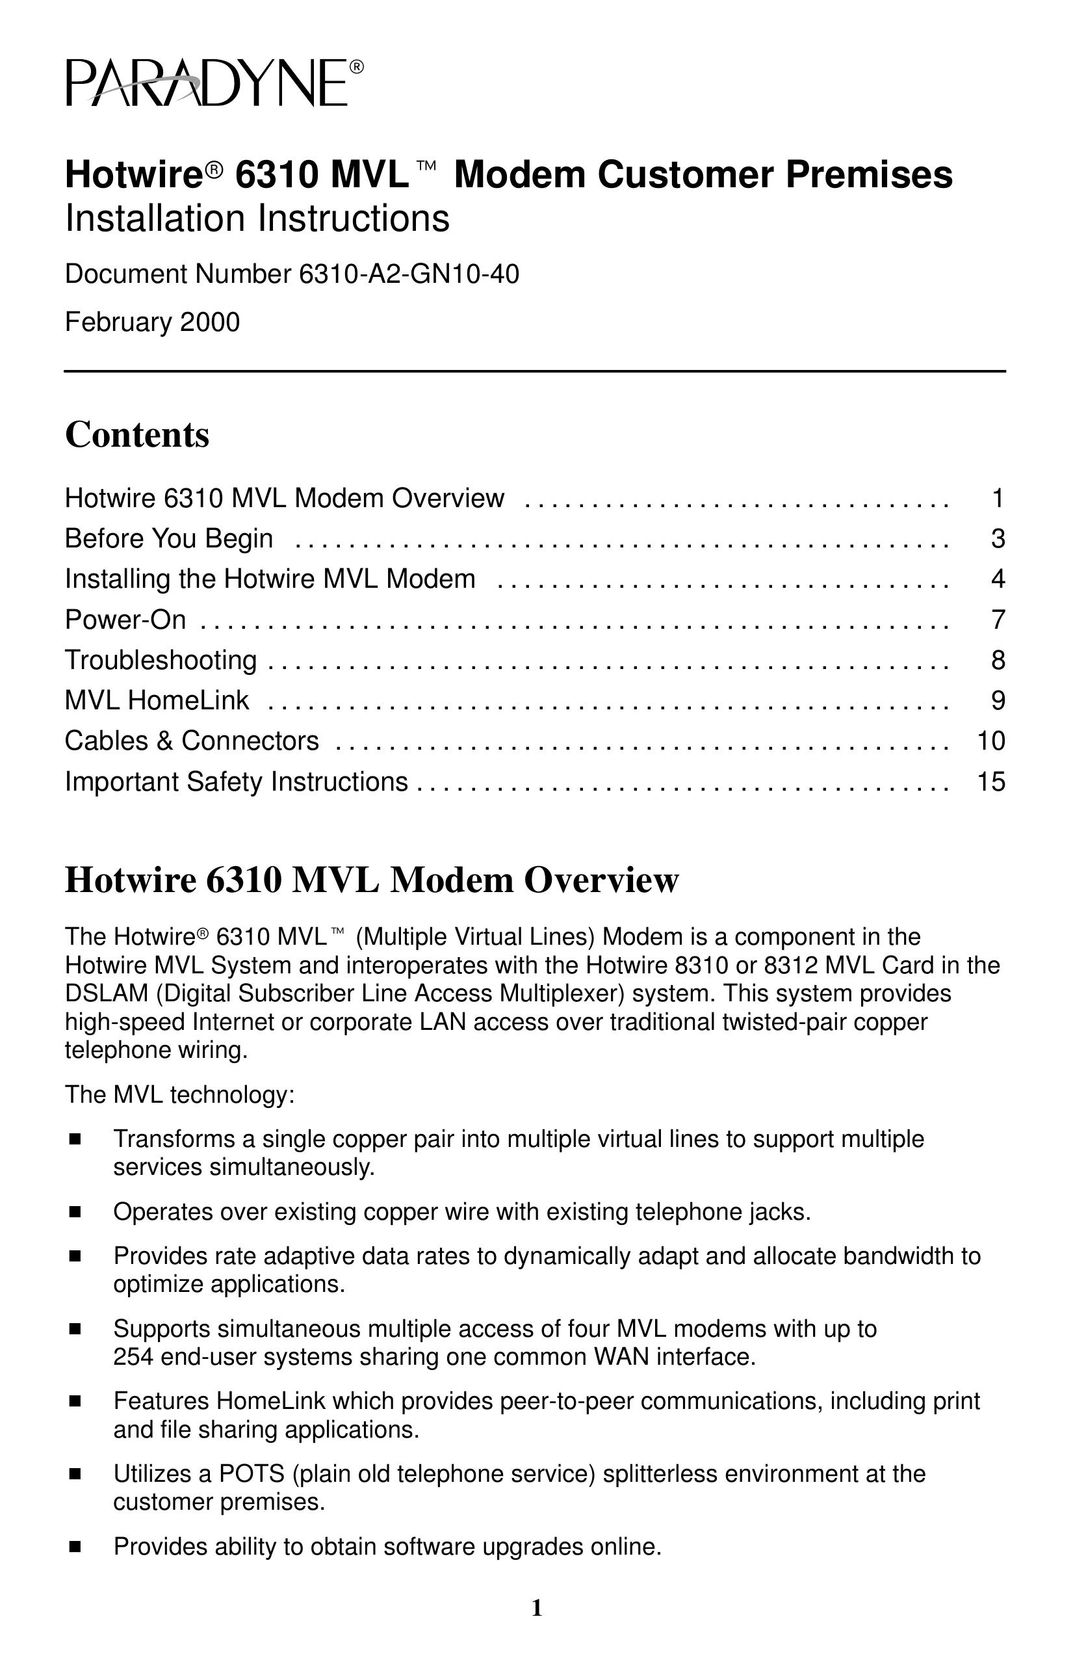 Paradyne 6310 MVLT Modem User Manual